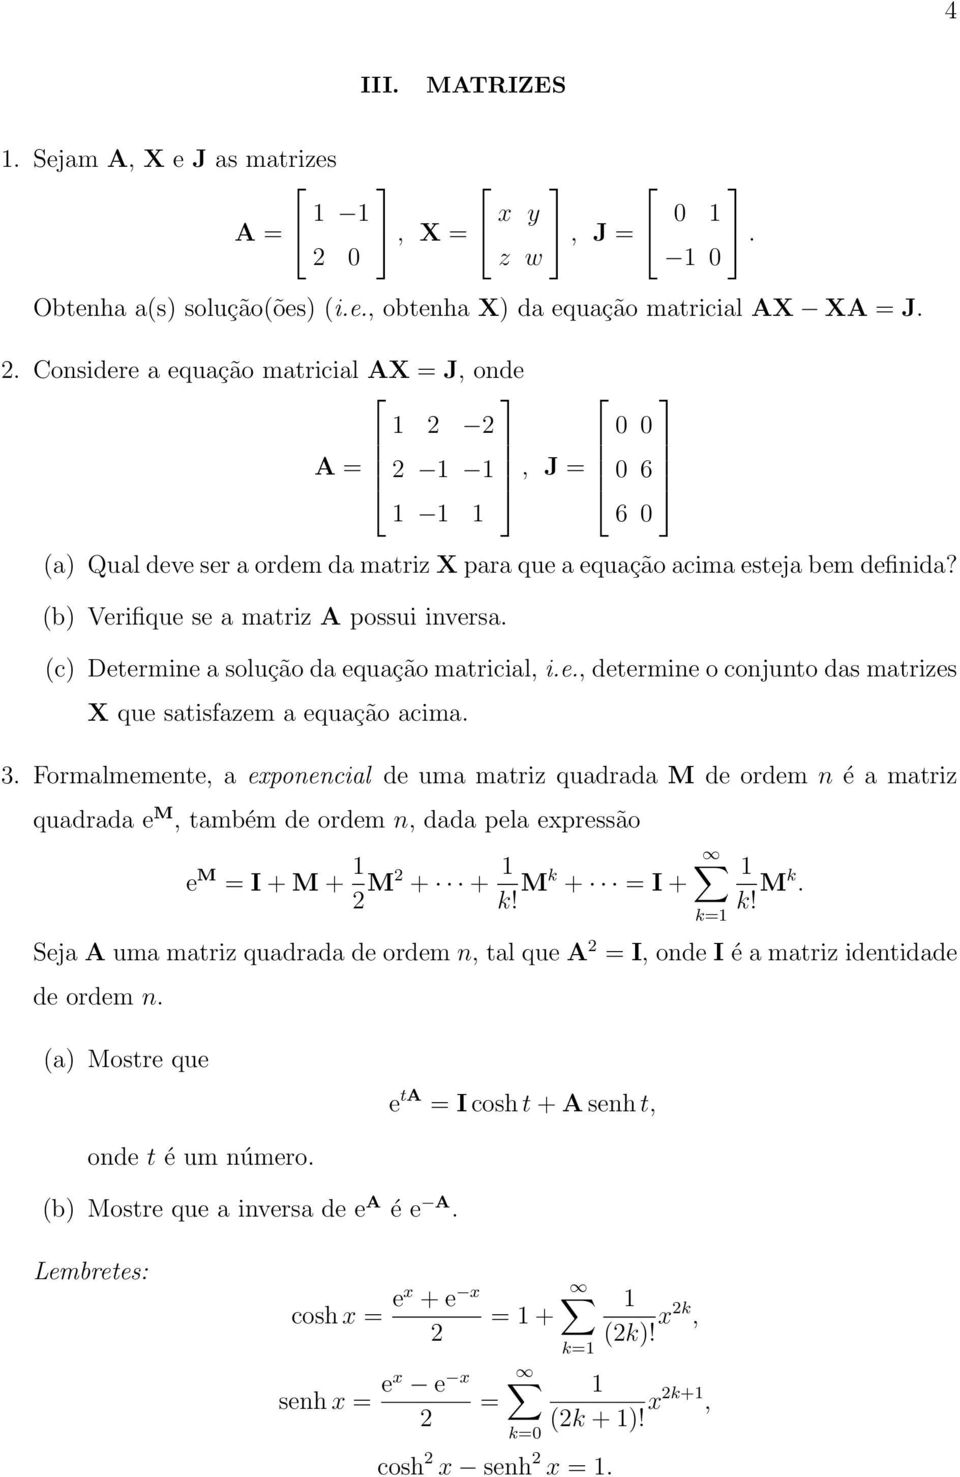 Considere a equação matricial AX = J, onde 1 2 2 0 0 A = 2 1 1, J = 0 6 1 1 1 6 0 (a) Qual deve ser a ordem da matriz X para que a equação acima esteja bem definida?